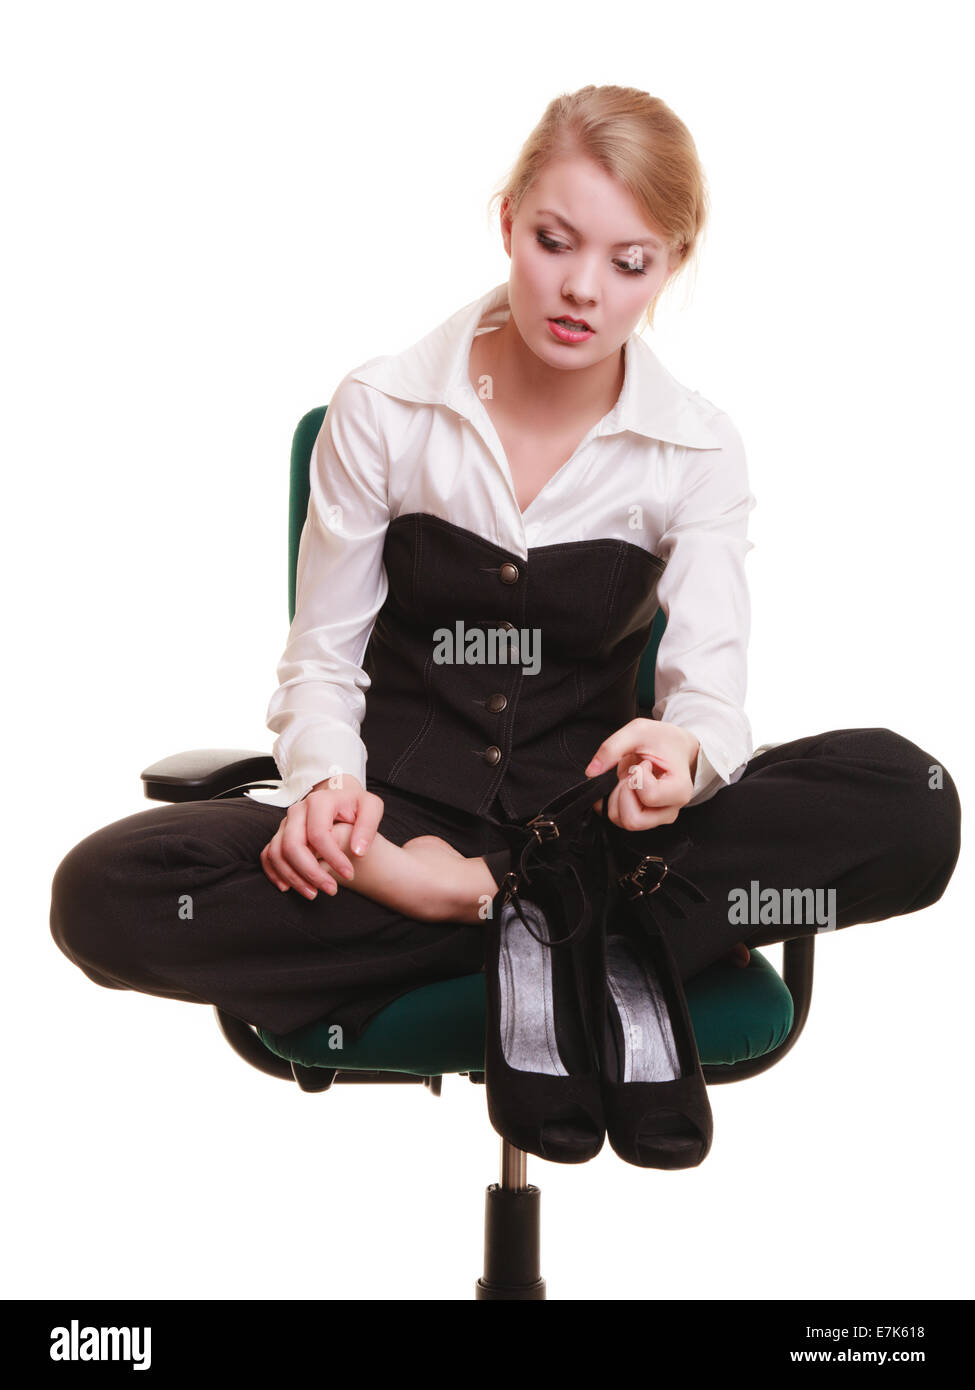 Pause von der Arbeit. Müde Geschäftsfrau mit Schmerzen in den Beinen. Junge Frau massiert ihre Füße auf Stuhl isoliert auf weiss. Stockfoto